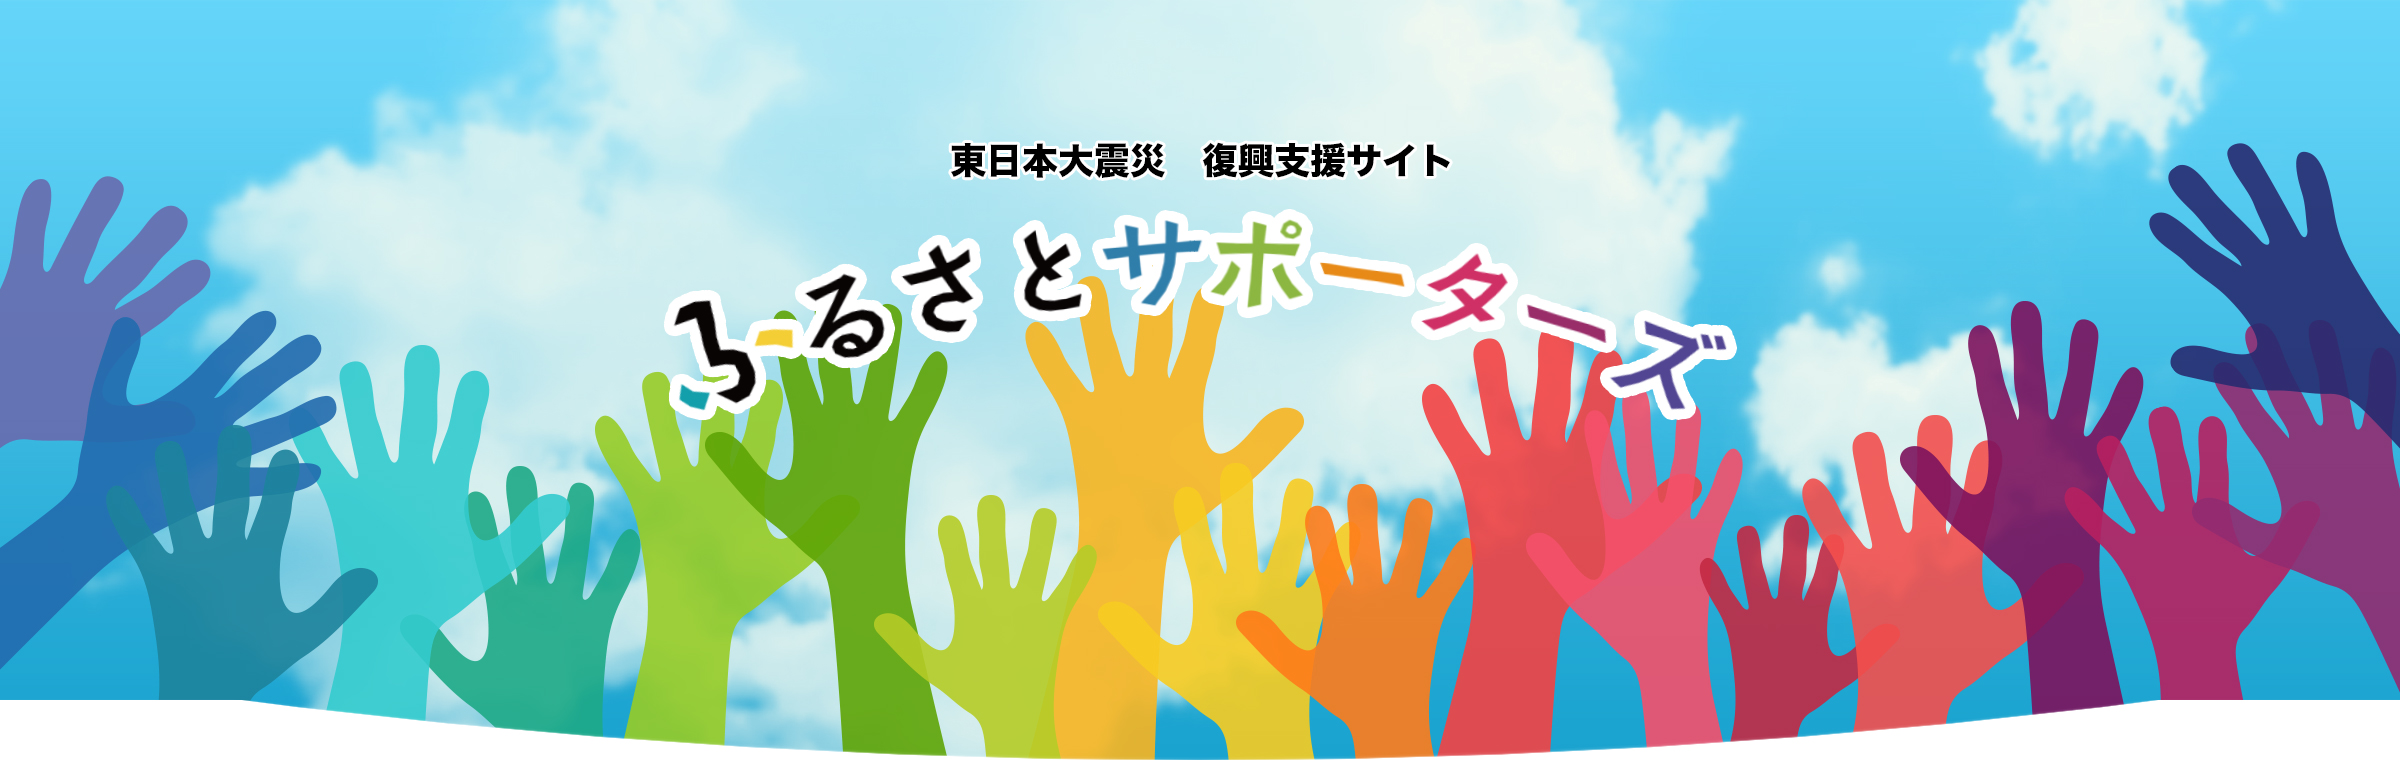 東日本大震災 復興支援サイト『ふるさとサポーターズ』